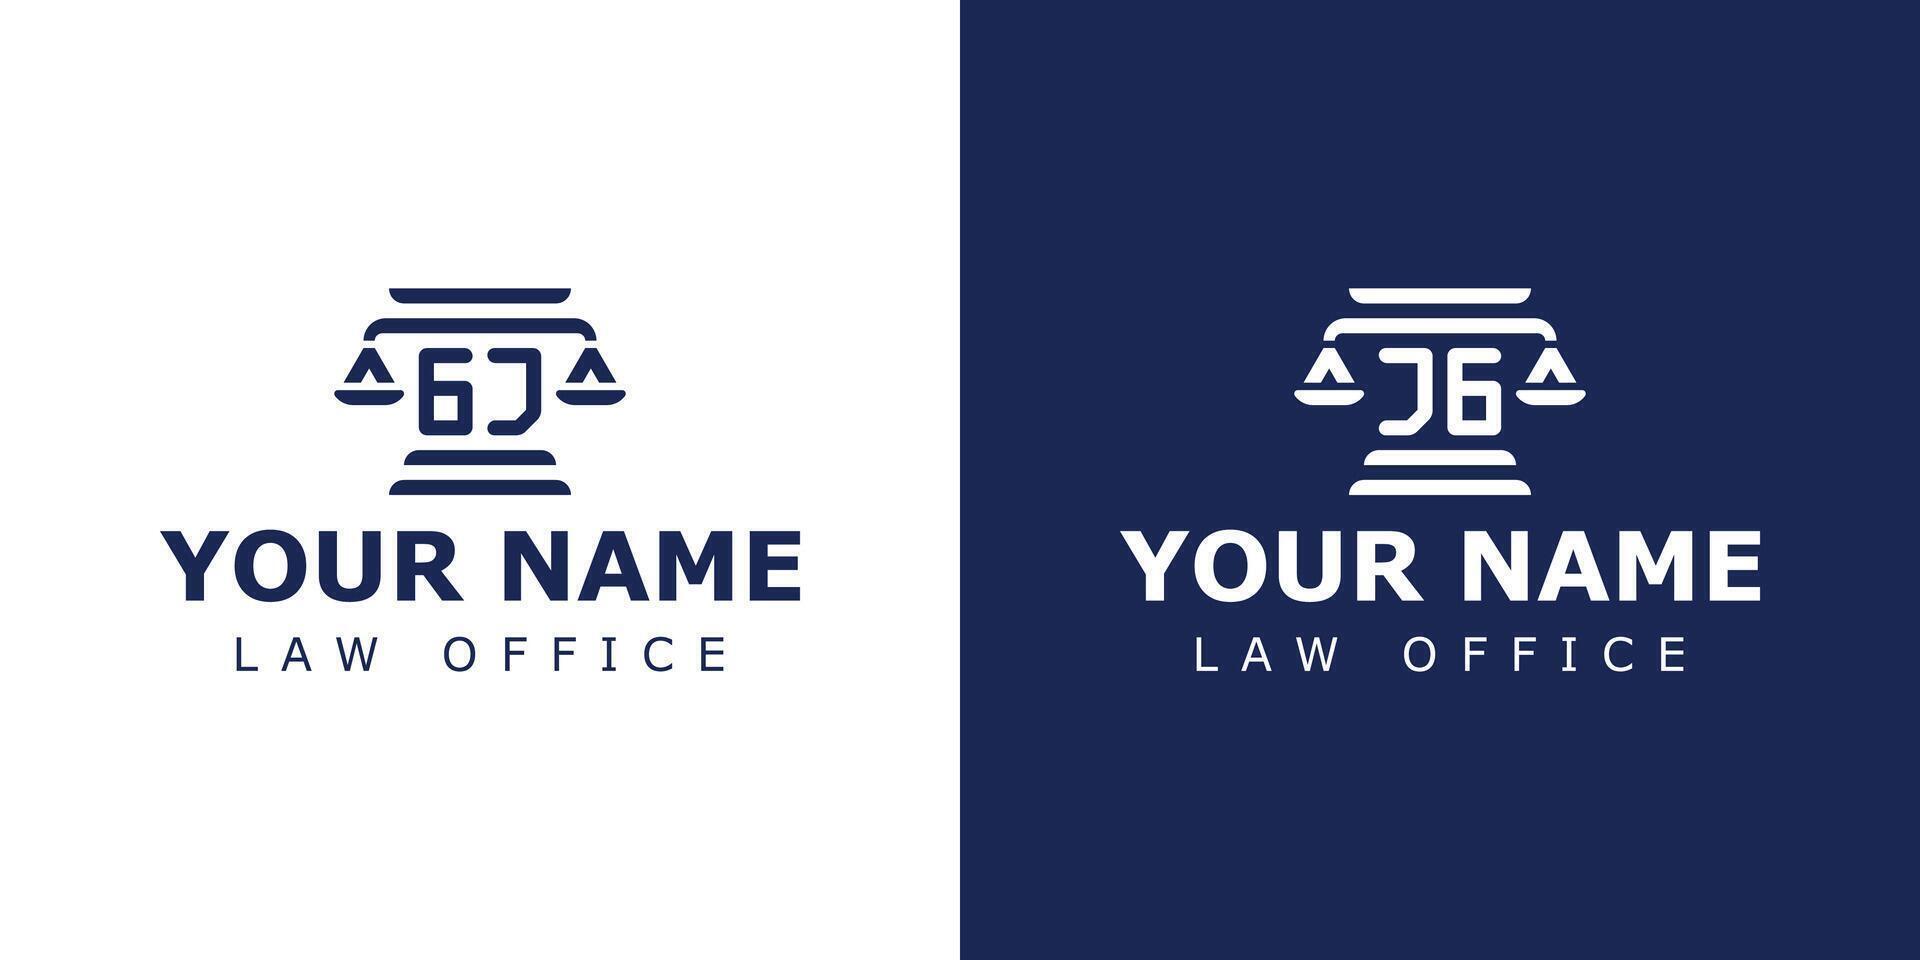 Briefe gj und jg legal Logo, geeignet zum Rechtsanwalt, legal, oder Gerechtigkeit mit gj oder jg Initialen vektor